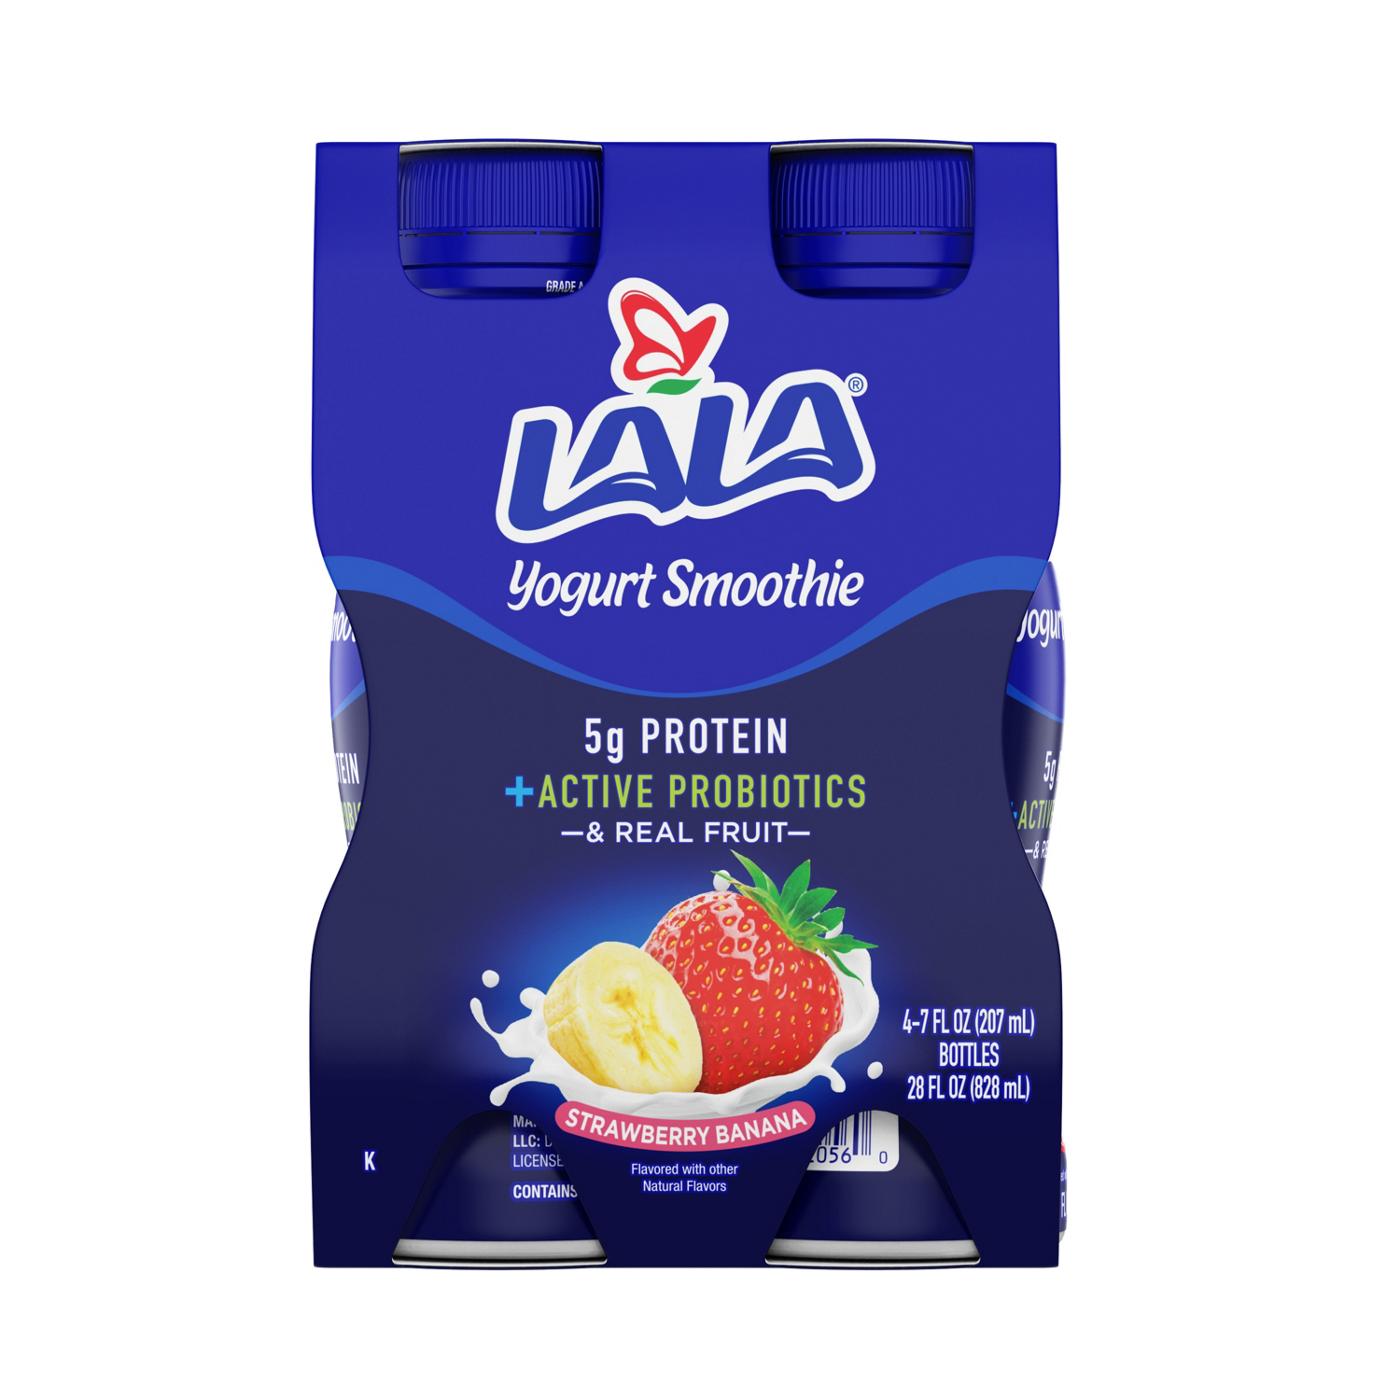 LALA Strawberry Banana Yogurt Smoothie 7 oz Bottles; image 1 of 3